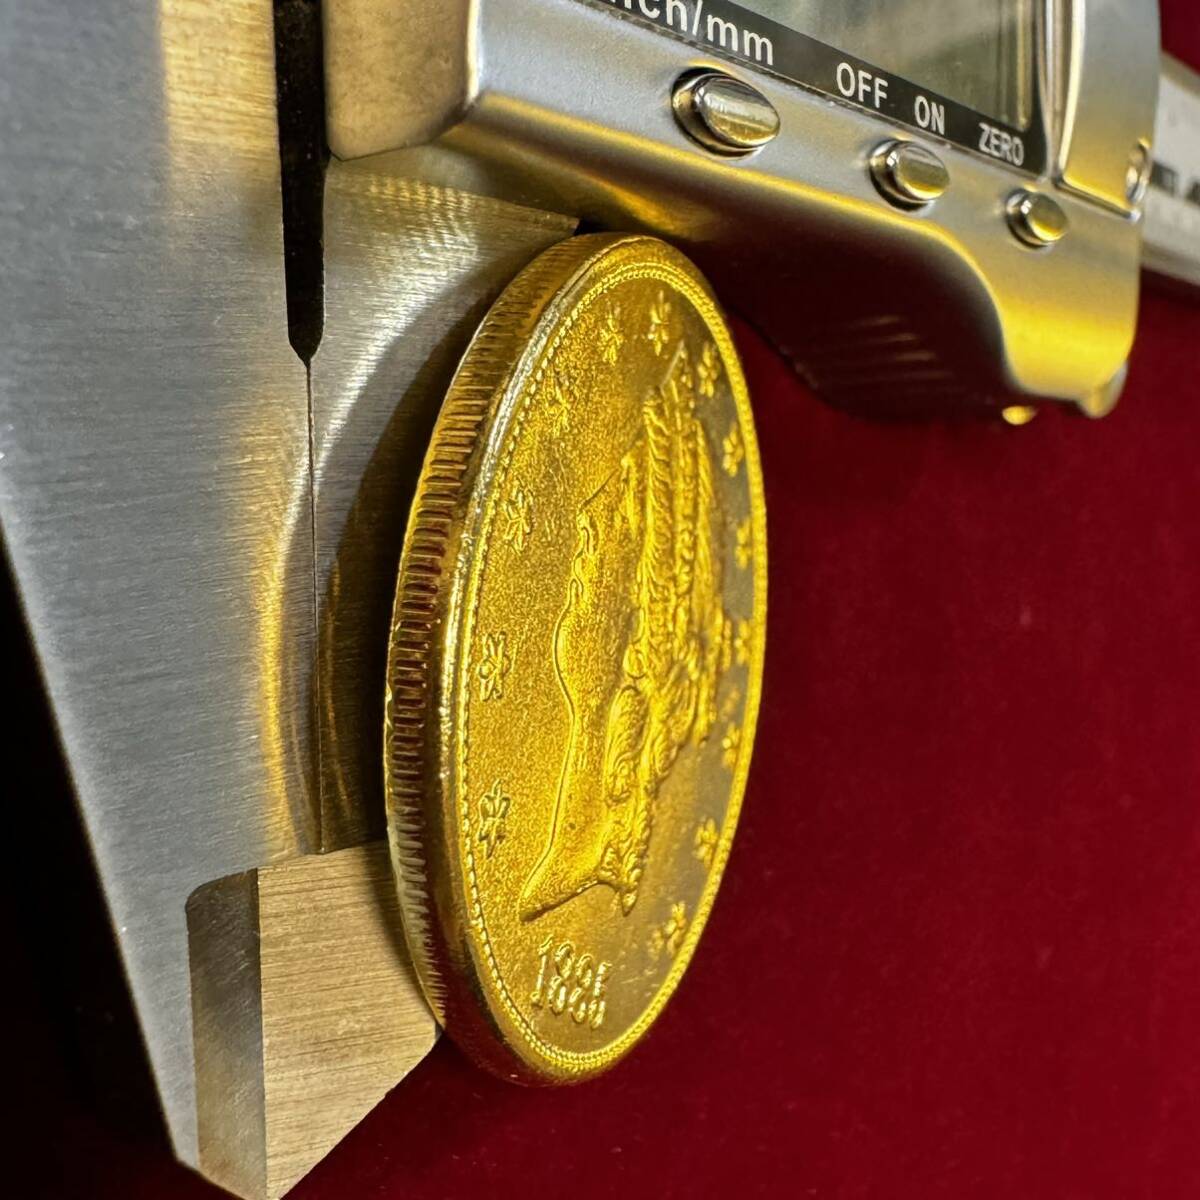 アメリカ 硬貨 古銭 自由の女神 1885年 ハクトウワシ 13の星 独立十三州 盾 オリーブの枝 コイン 金貨 外国古銭 海外硬貨 _画像3